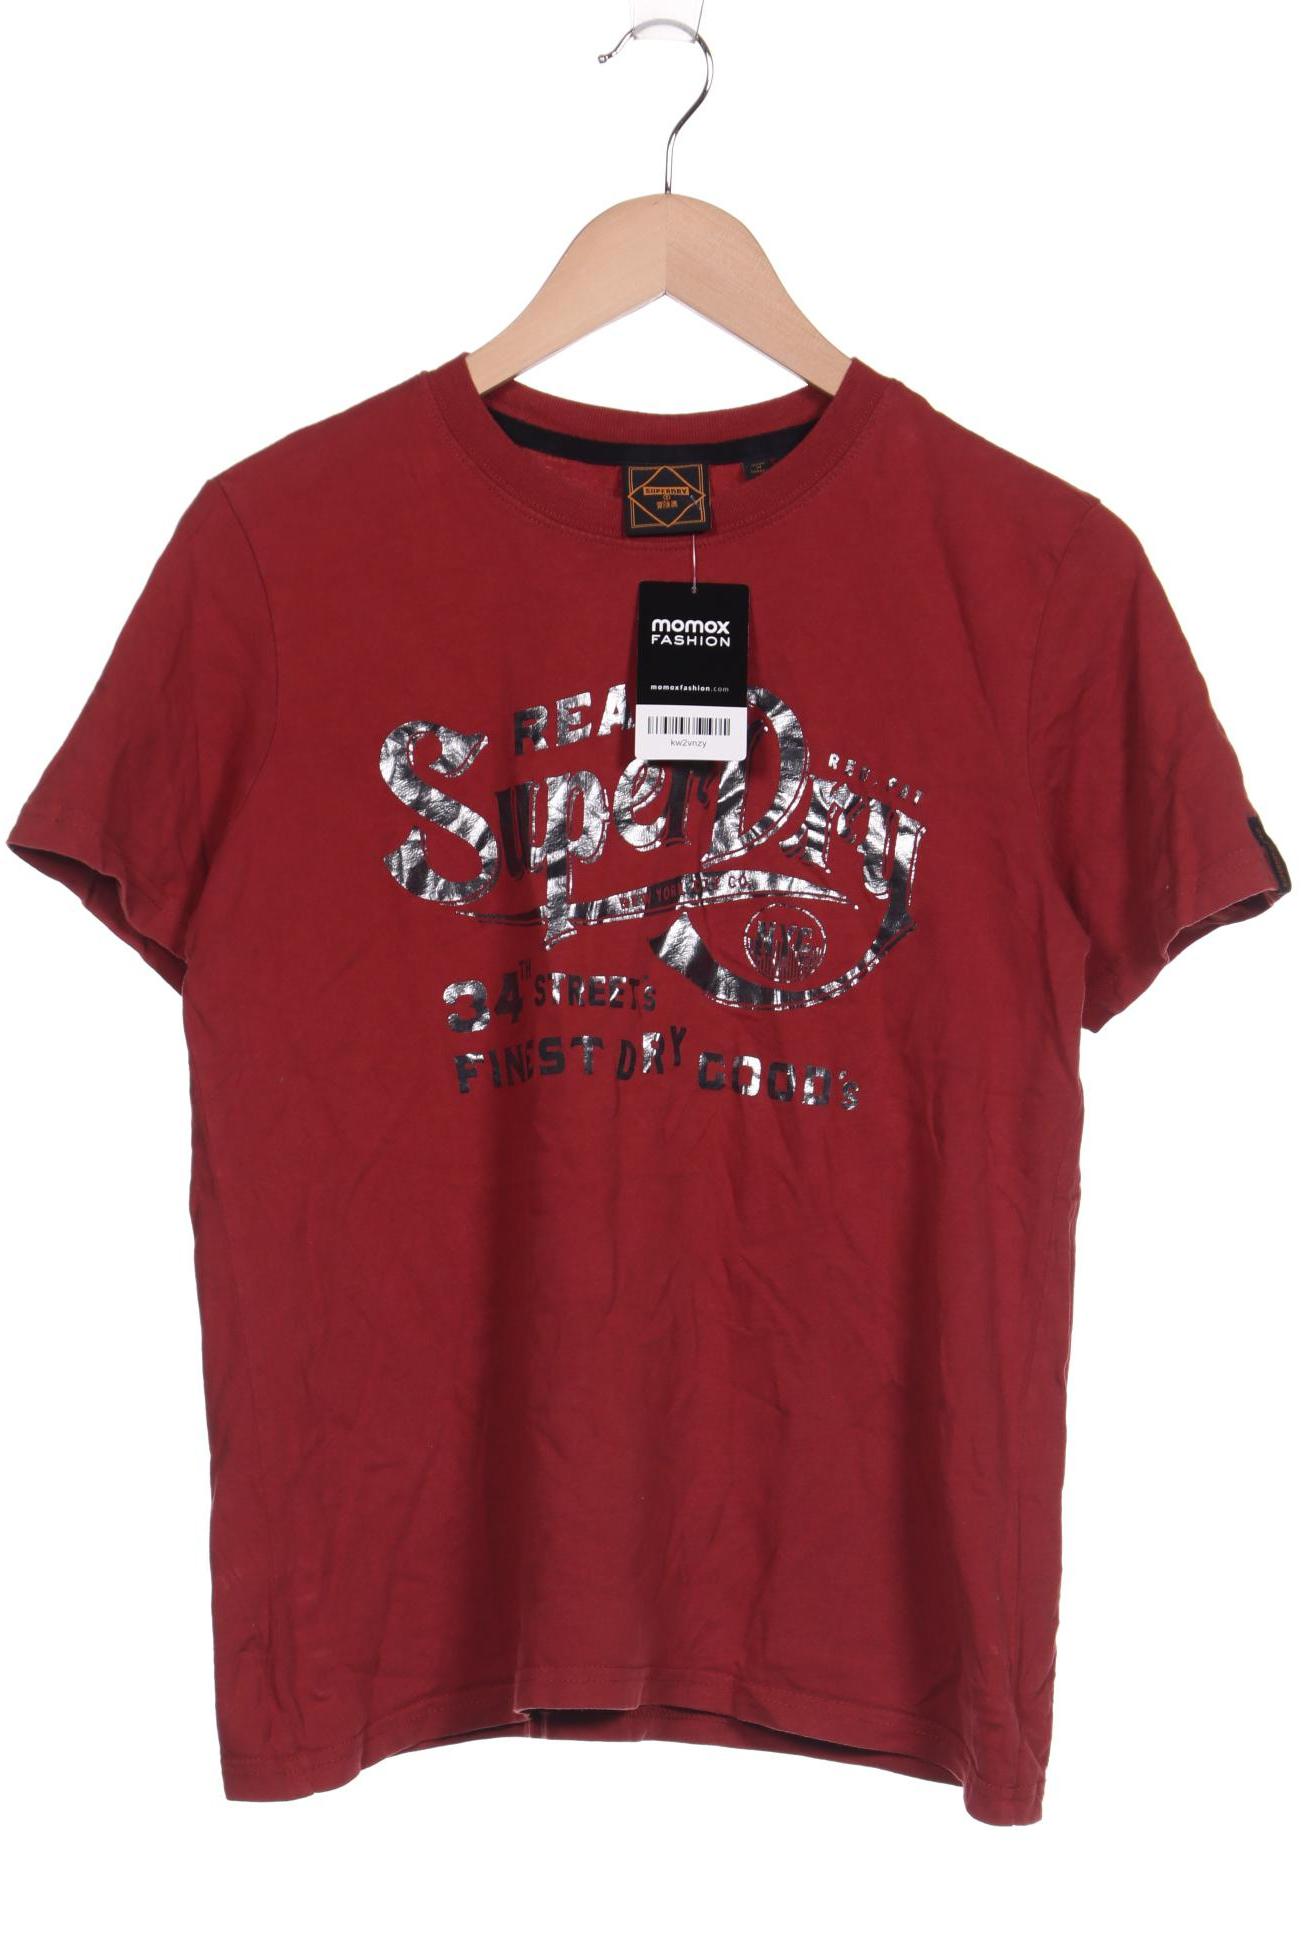 Superdry Damen T-Shirt, rot, Gr. 38 von Superdry